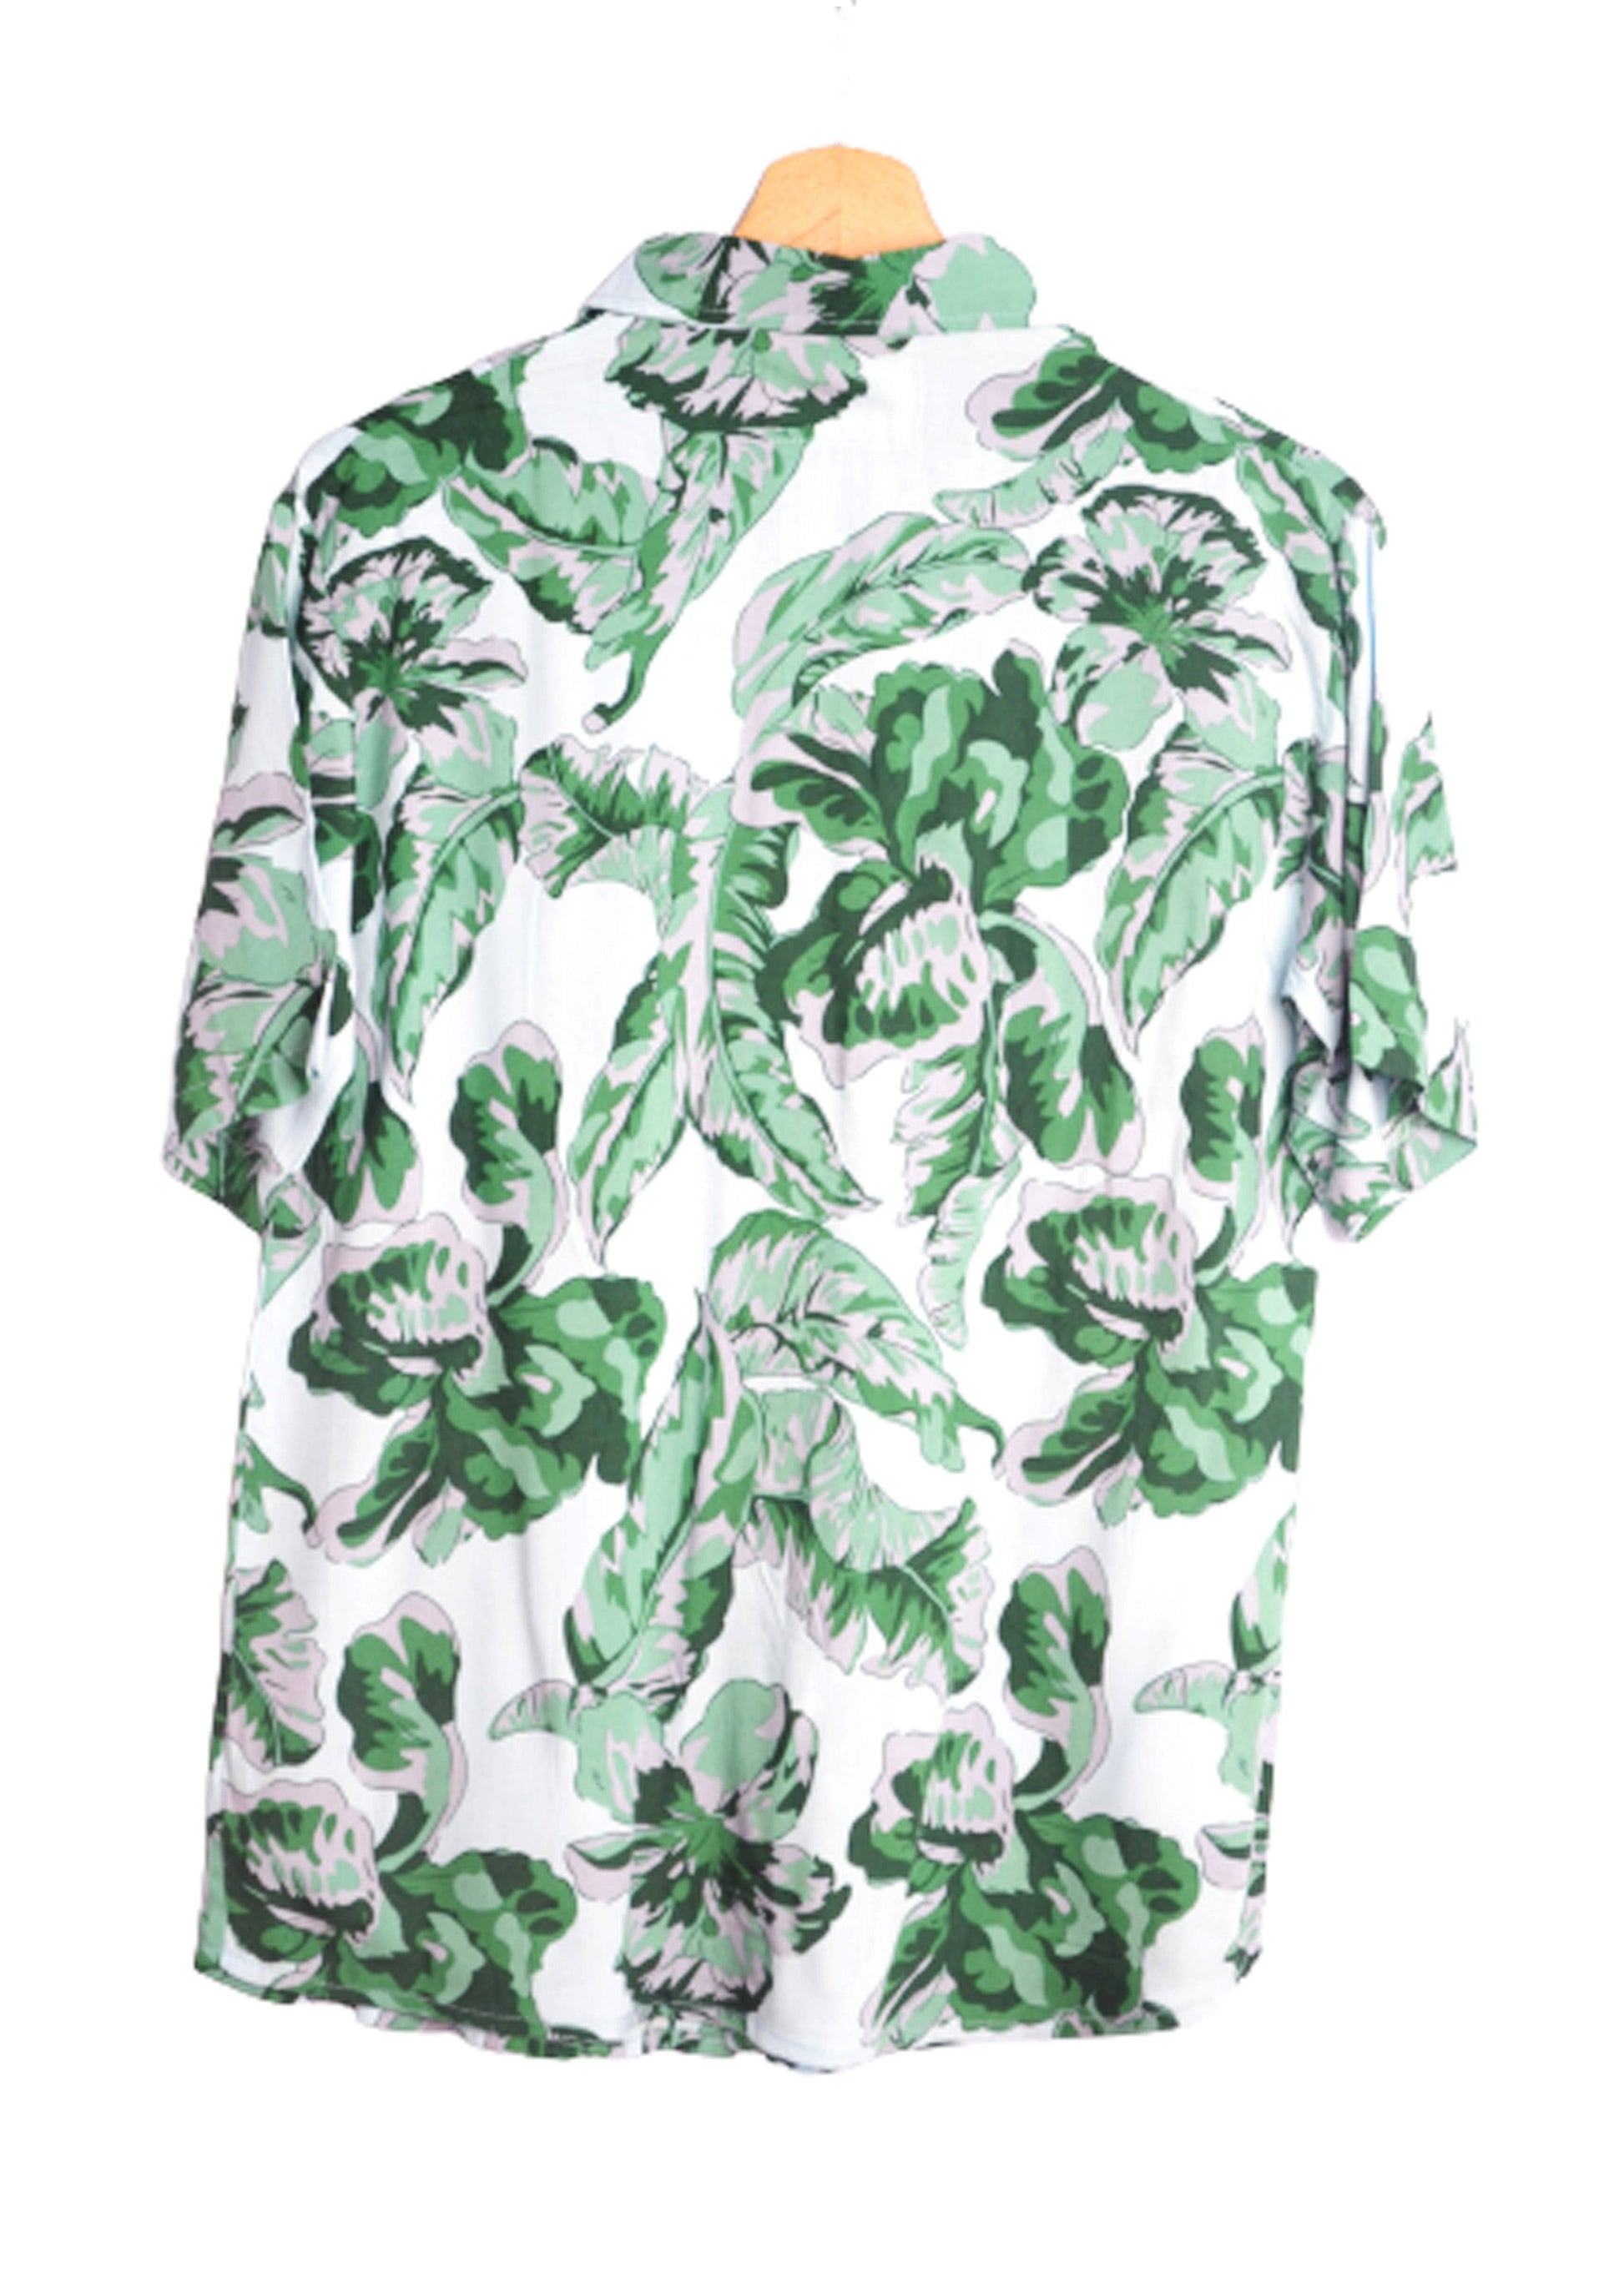 Vue dos chemise hawaienne homme couleur gris et vert - GL BOUTIK